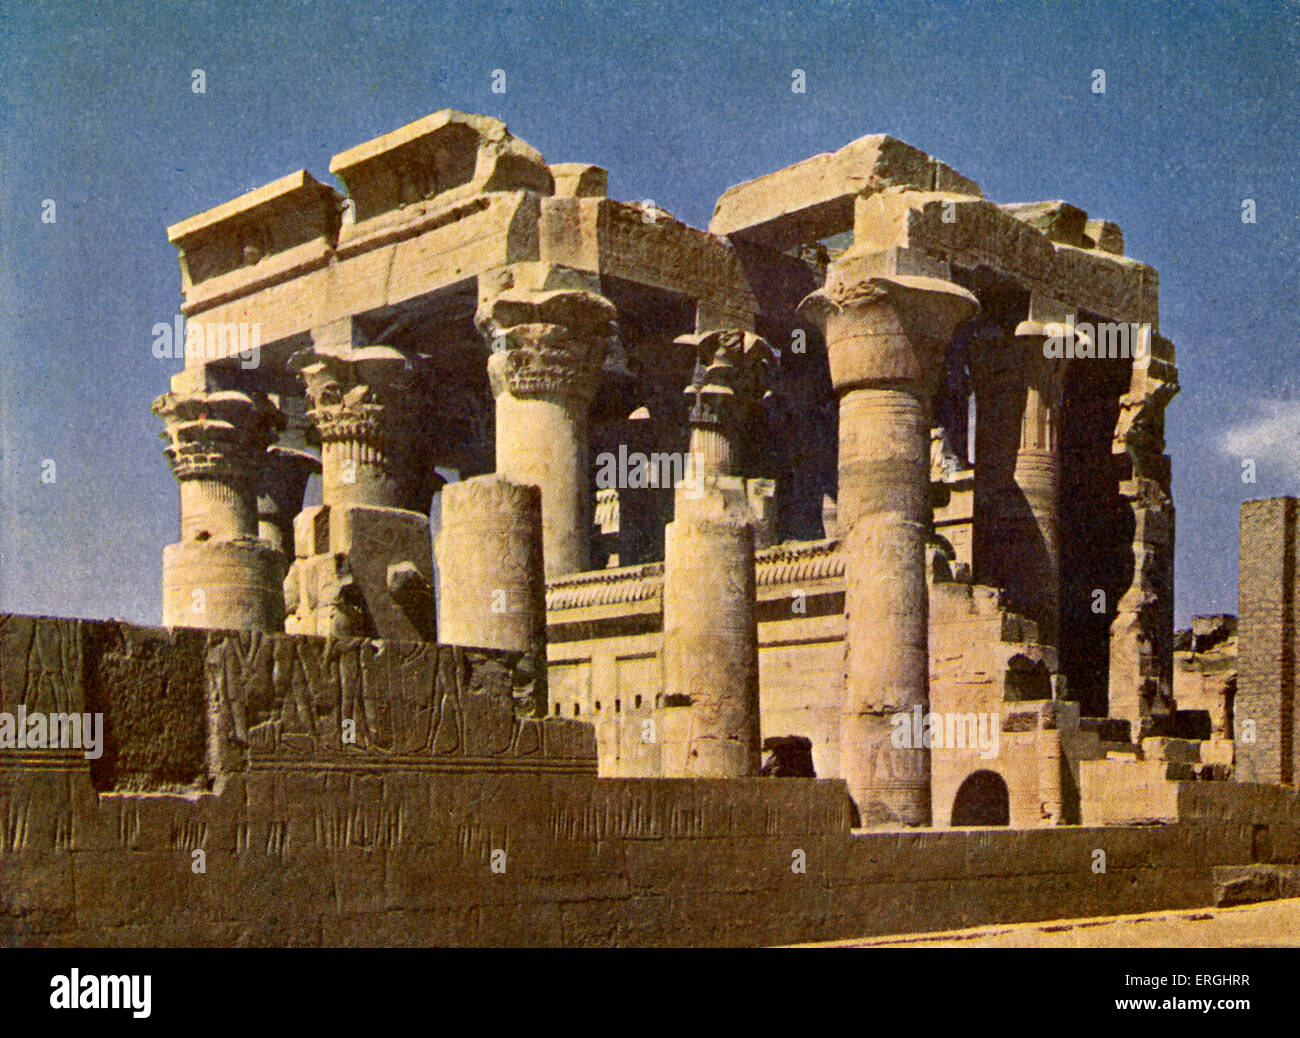 Tempio di Kom Ombo, Egitto. Foto dal libro di 1923. Foto Stock